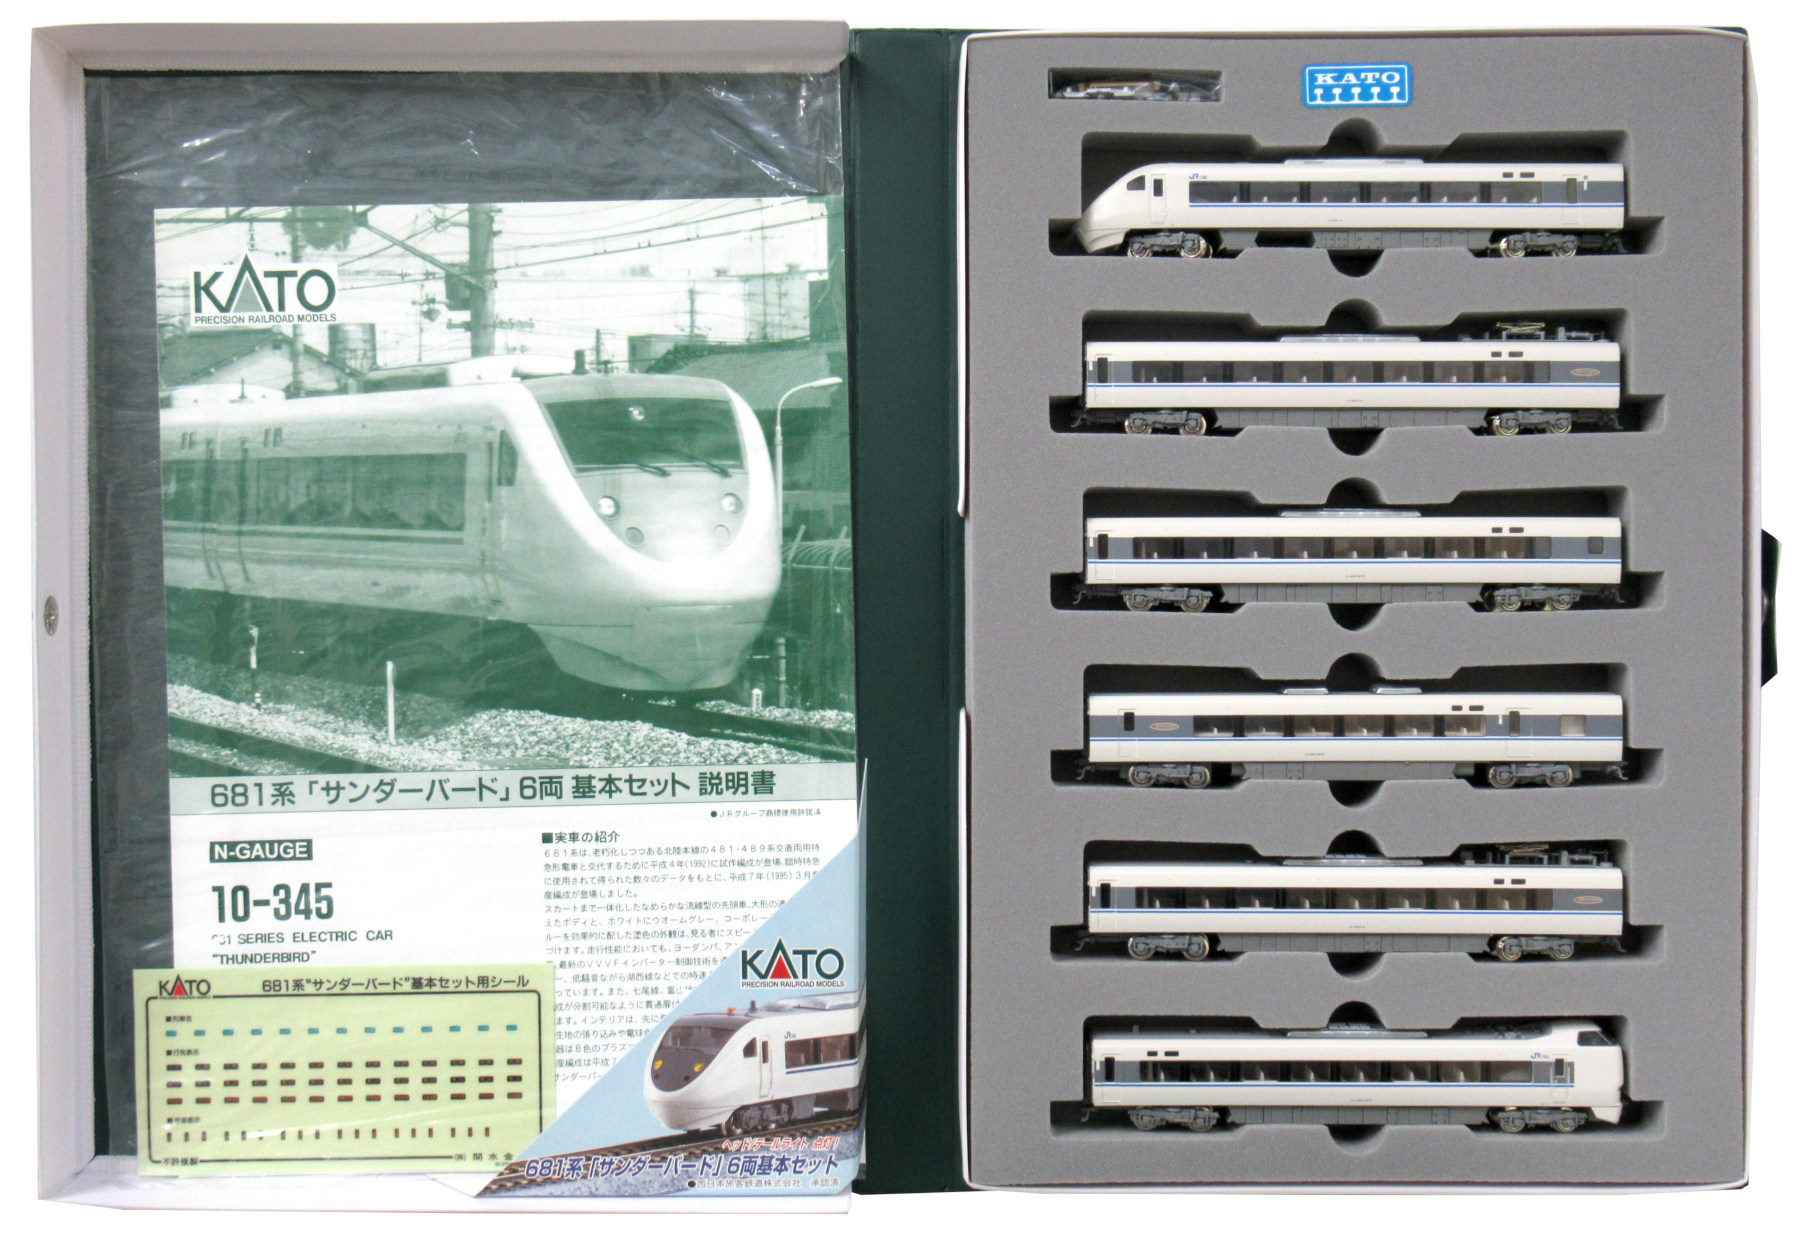 kato 681系サンダーバード基本+増結9両フル編成セット Nゲージ - 鉄道模型